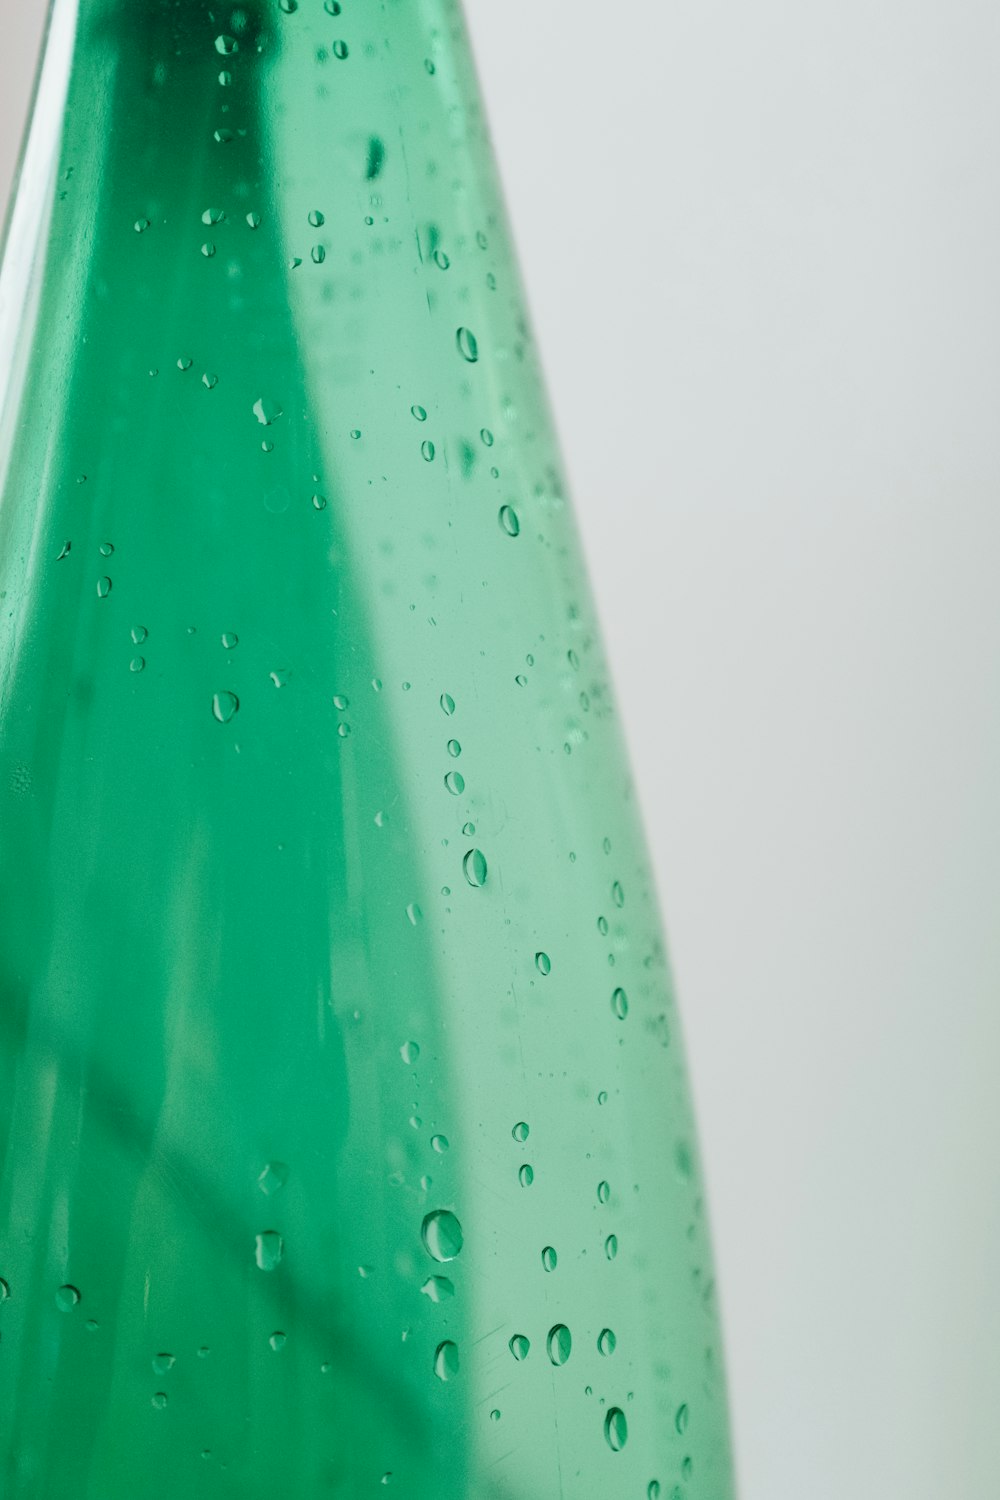 grüne Plastikflasche mit Wassertröpfchen